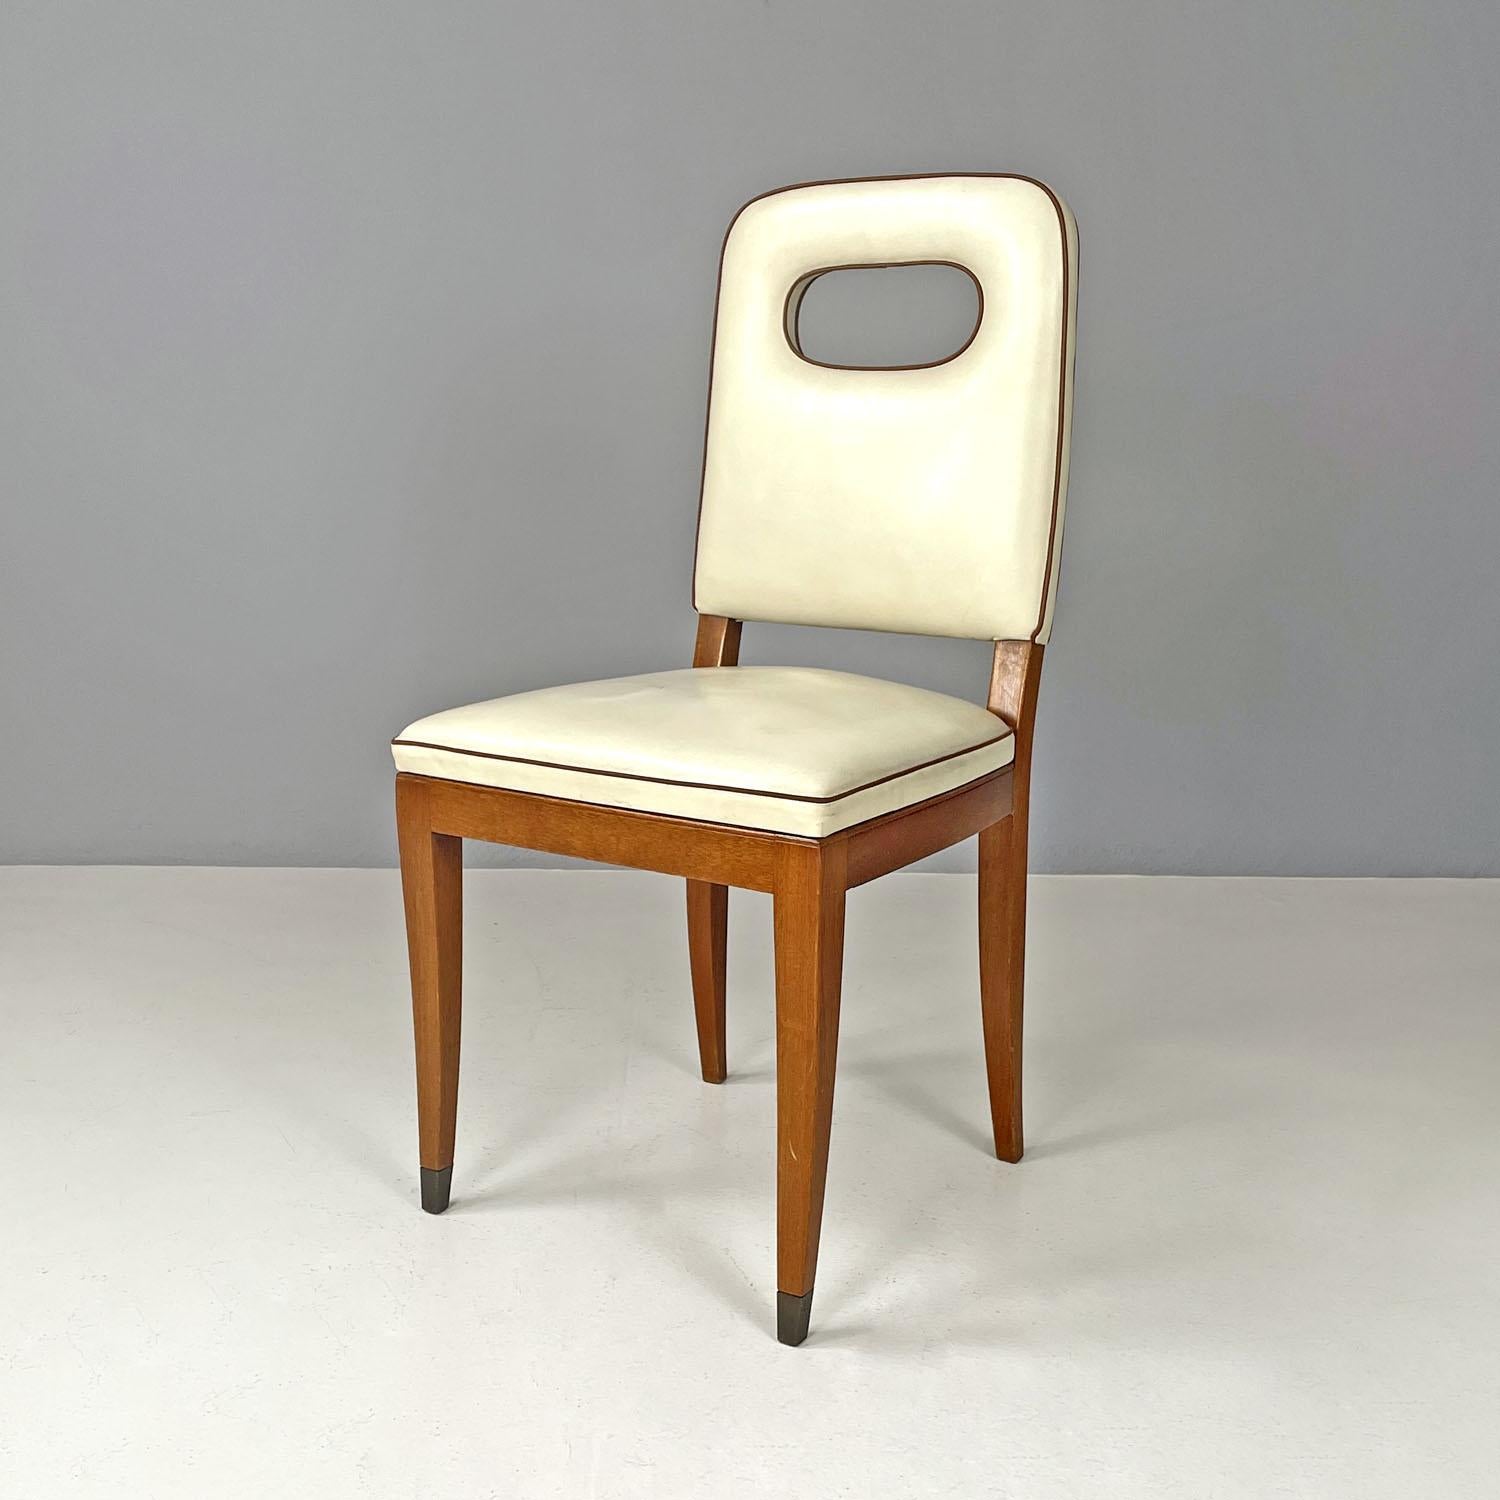 Chaise italienne Art Déco en cuir blanc et bois de Giovanni Gariboldi, années 1940
Chaise à assise rectangulaire avec structure en bois. L'assise et le dossier sont paddés et recouverts de cuir blanc avec des profils en cuir marron, fixés à la